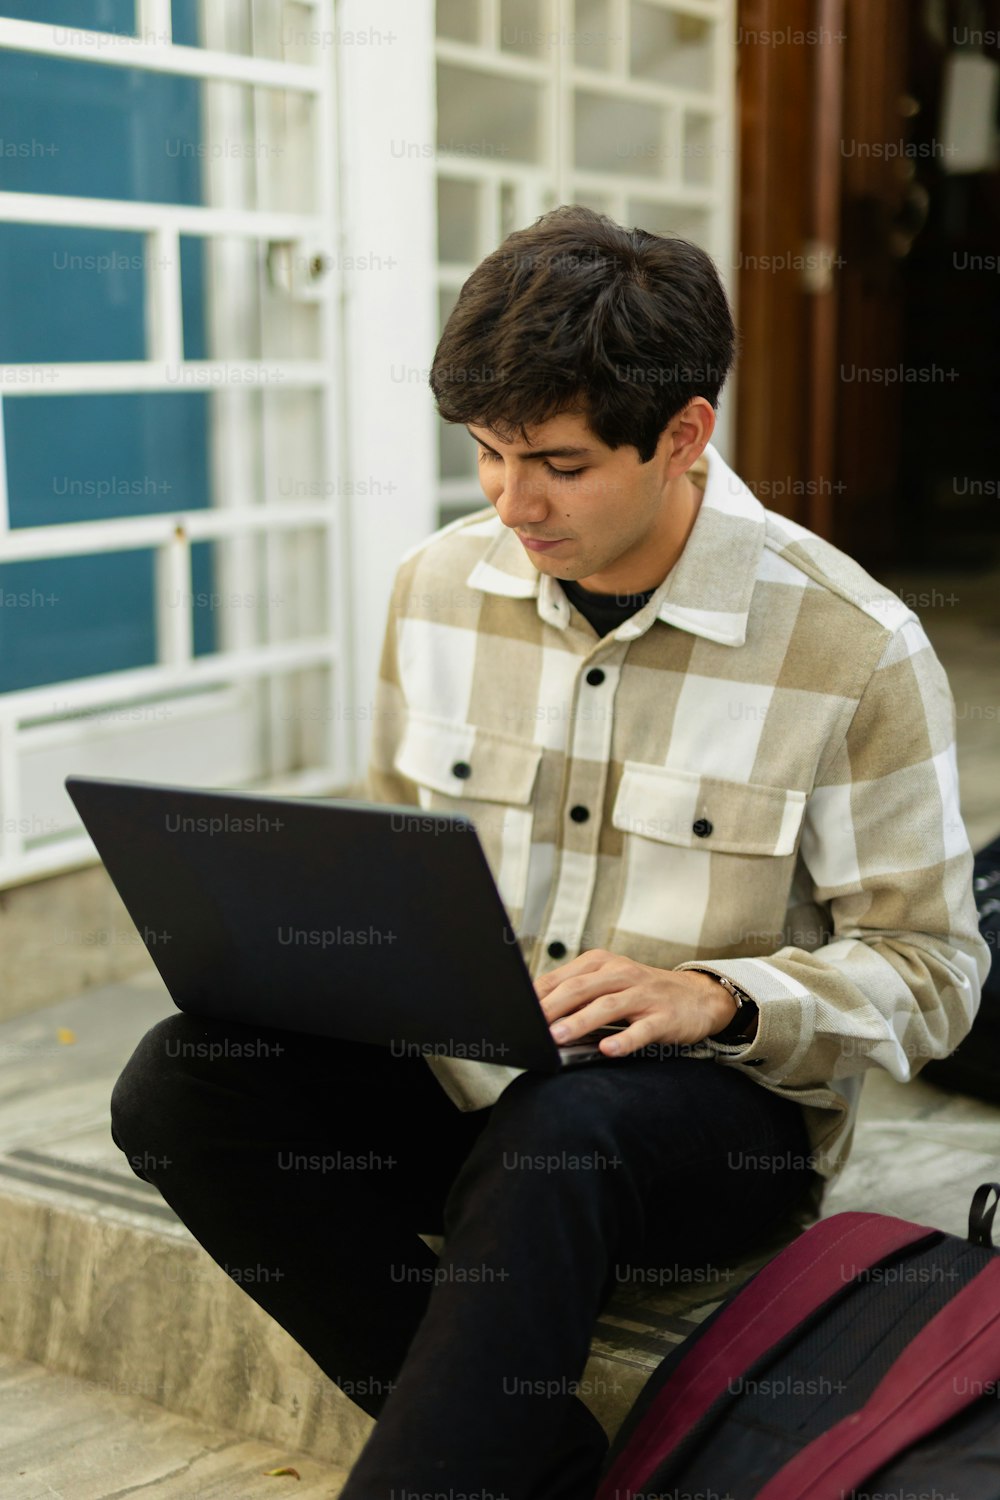 ノートパソコンを使って段差に座ってい�る男性